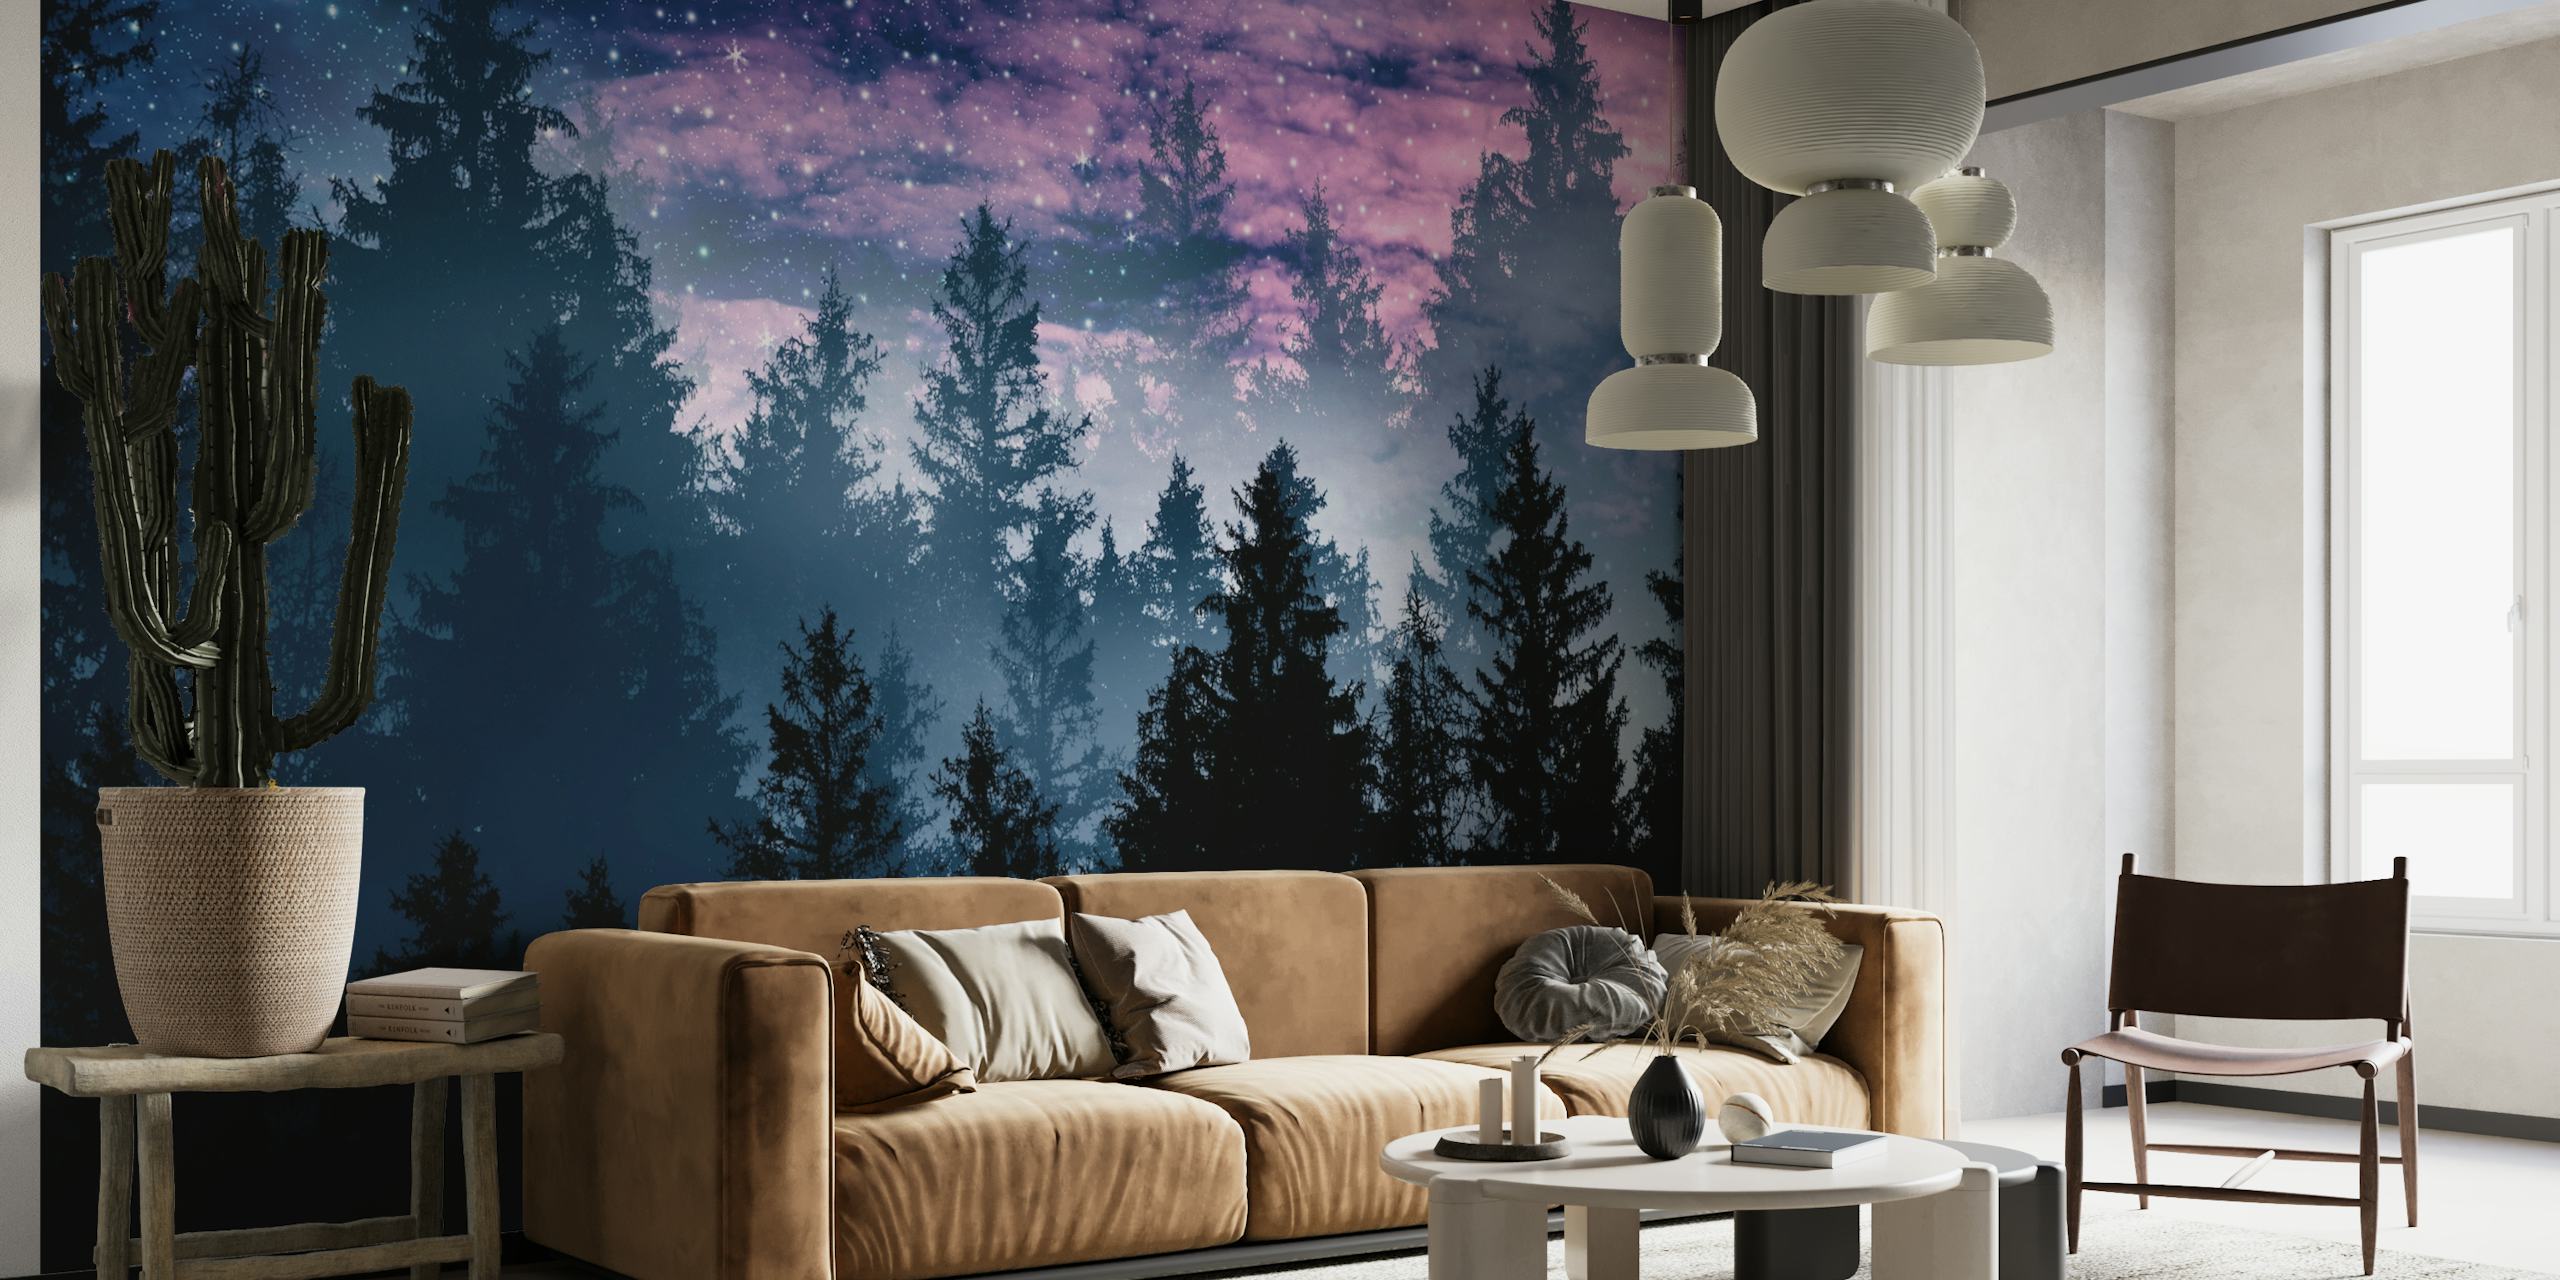 Forest Galaxy Dream 1 behang